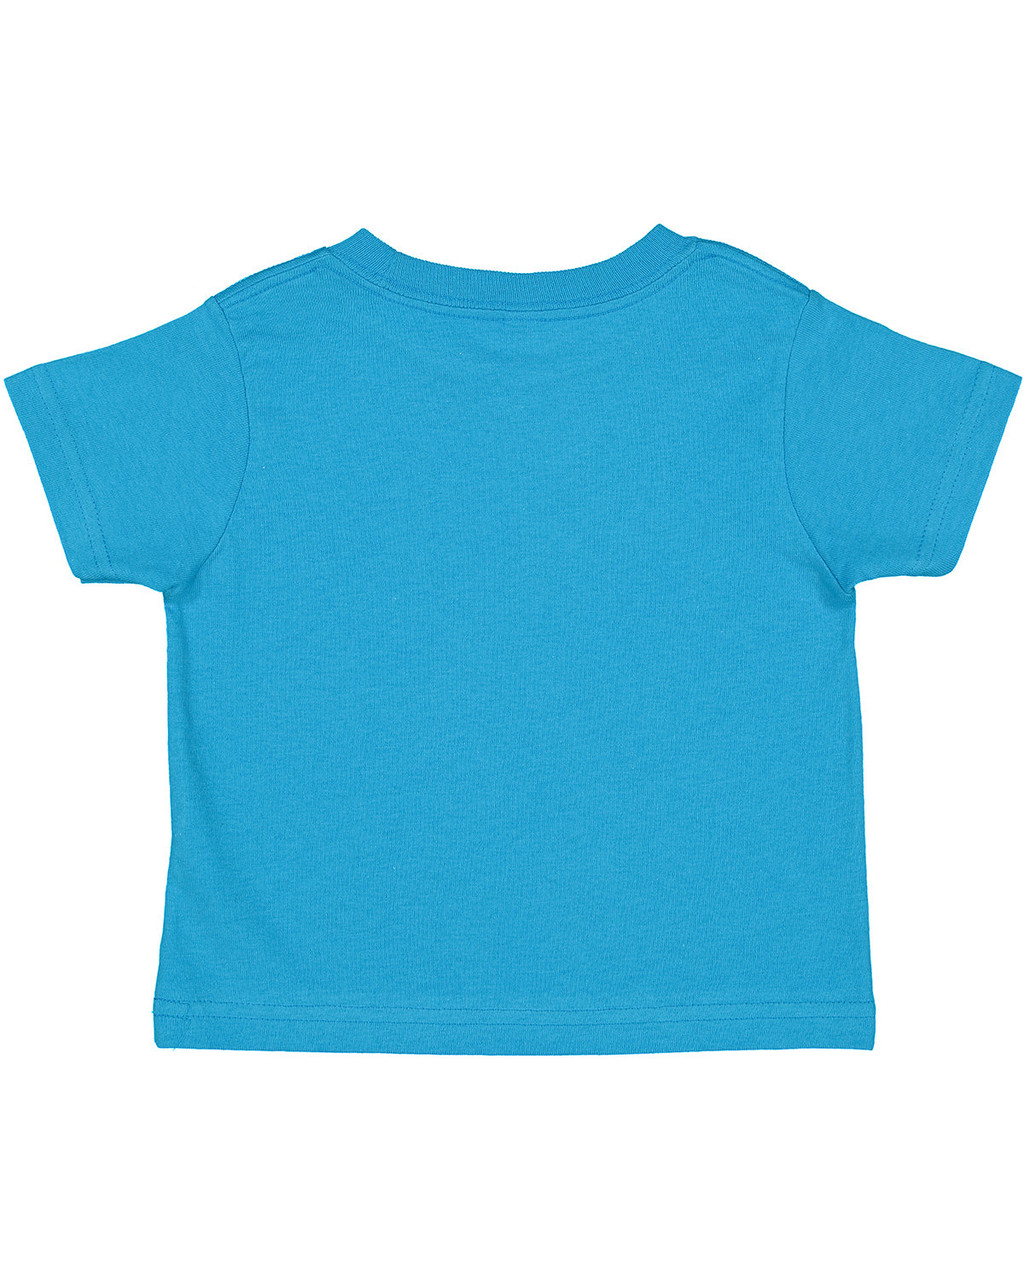 Rabbit Skins RS3301 Toddler Cotton Jersey T-Shirt - ClothingAuthority.com